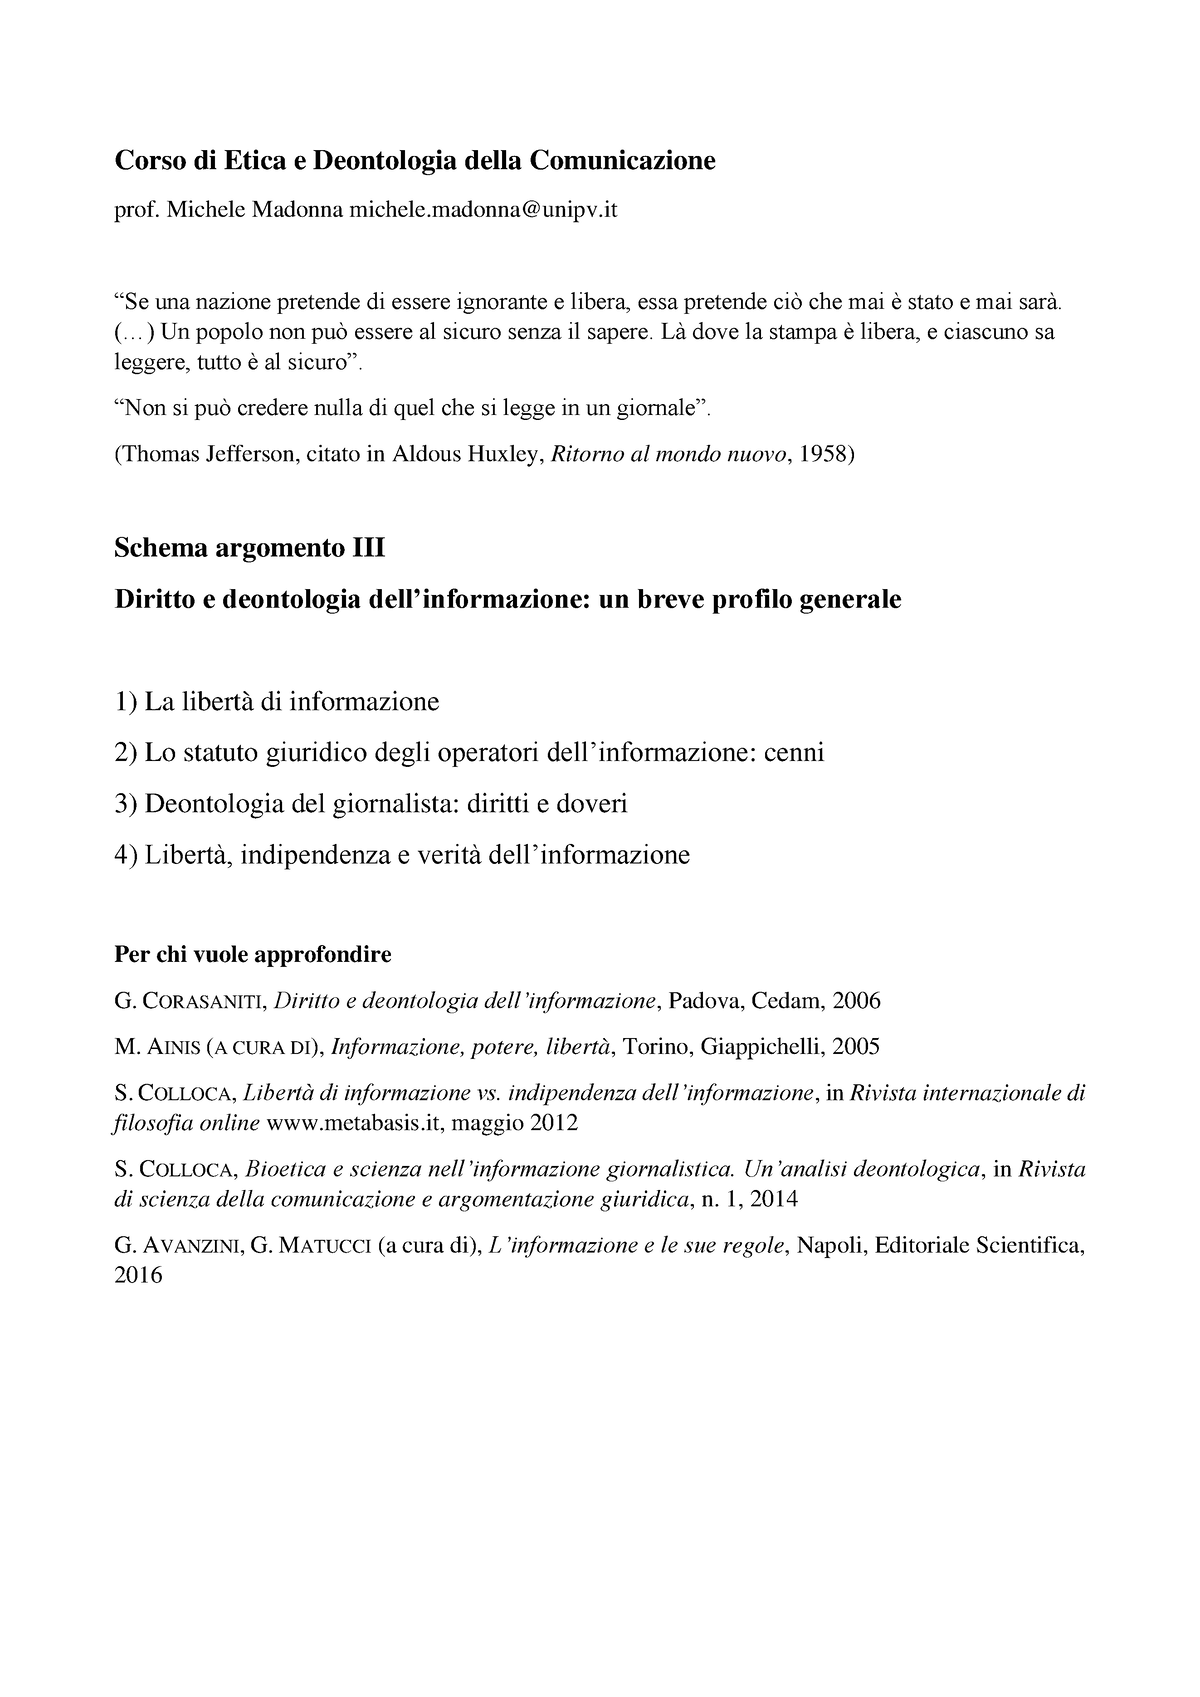 Schemaargomento Iii Corso Di Etica E Deontologia Della Comunicazione Prof Michele 1685